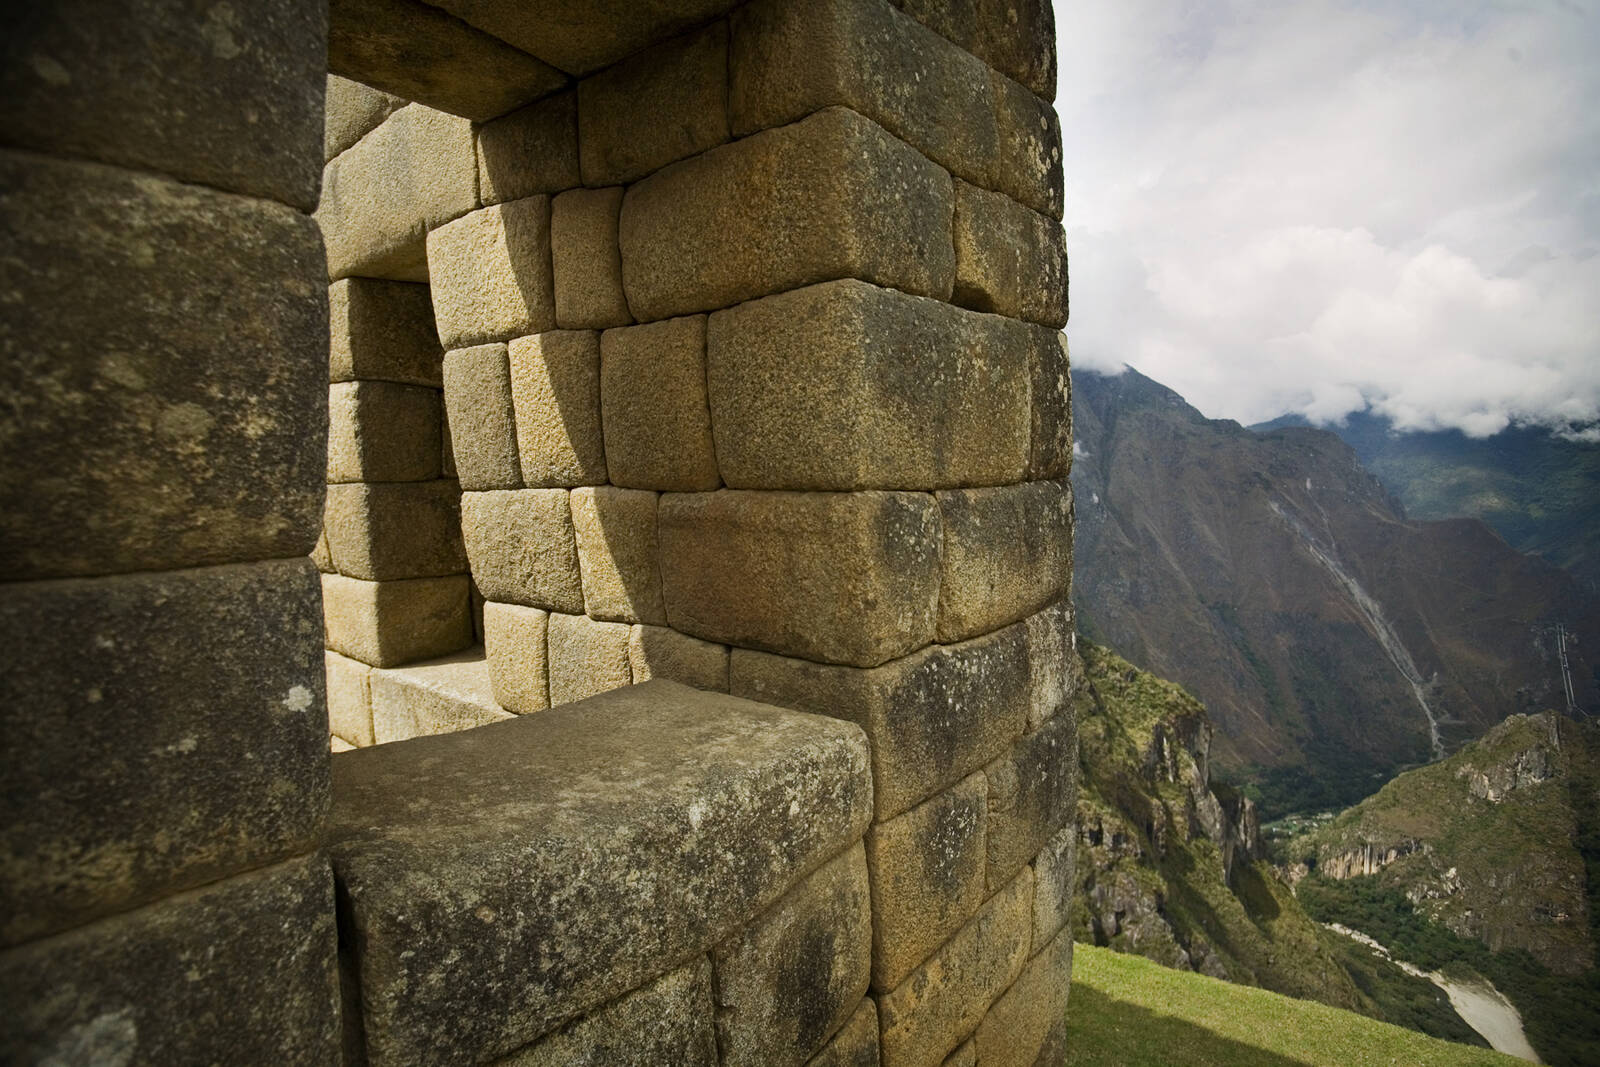 Image of Machu Picchu, Peru by Darlene Hildebrandt